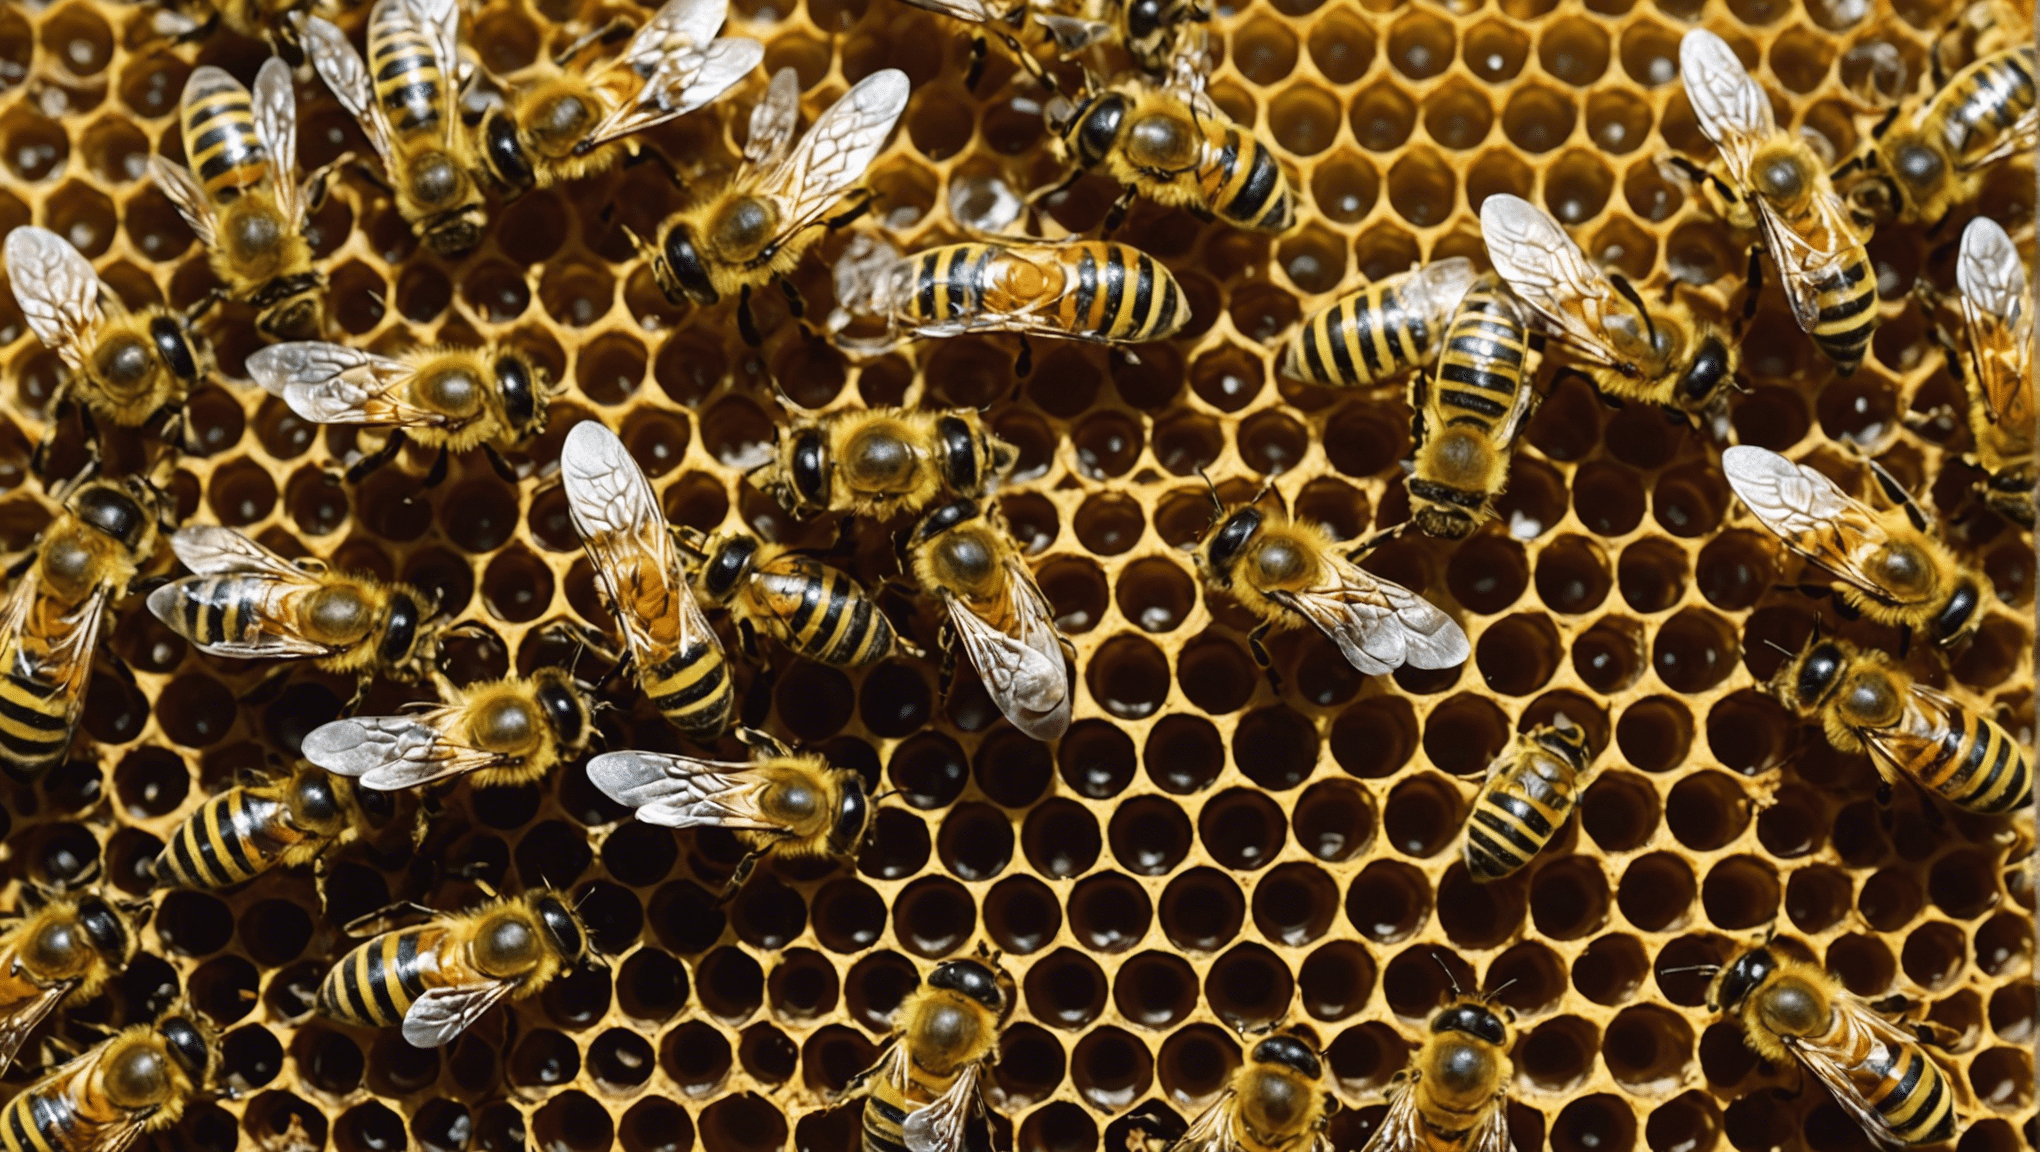 ミツバチの隠された宝物、つまり自然界におけるミツバチの重要な役割、蜂蜜とプロポリスの生産、環境への影響を発見しましょう。